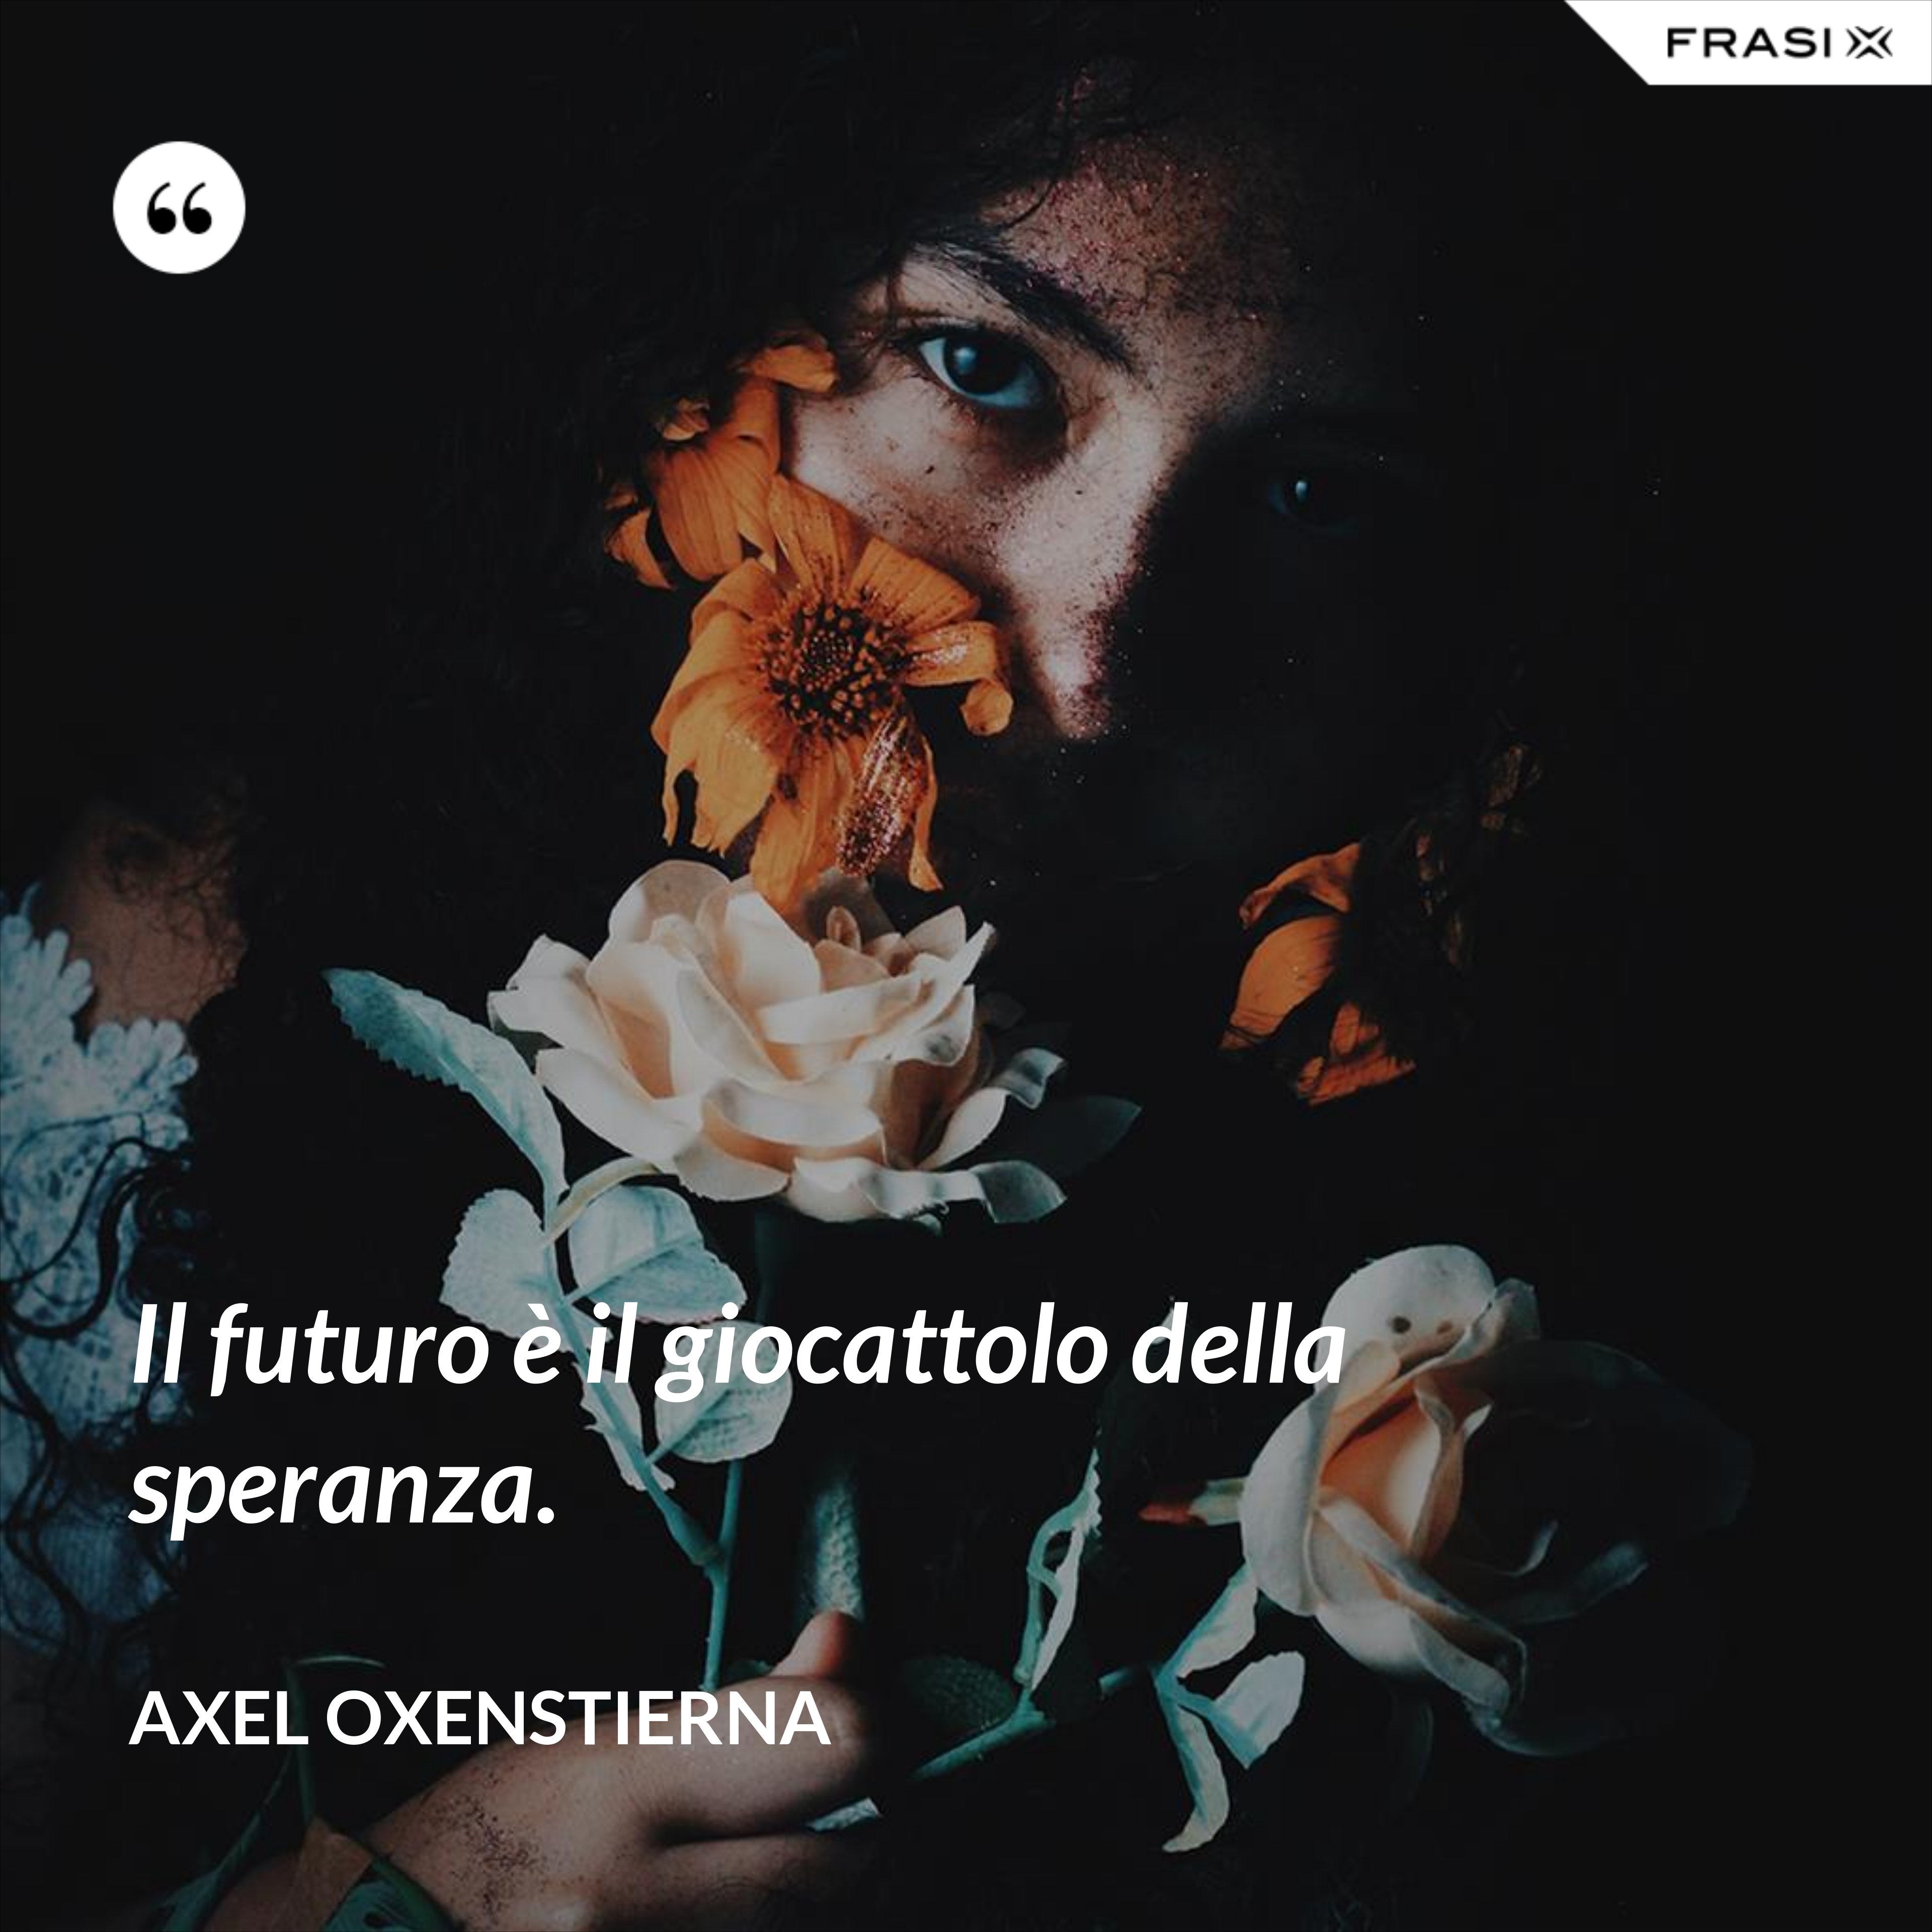 Il futuro è il giocattolo della speranza. - Axel Oxenstierna